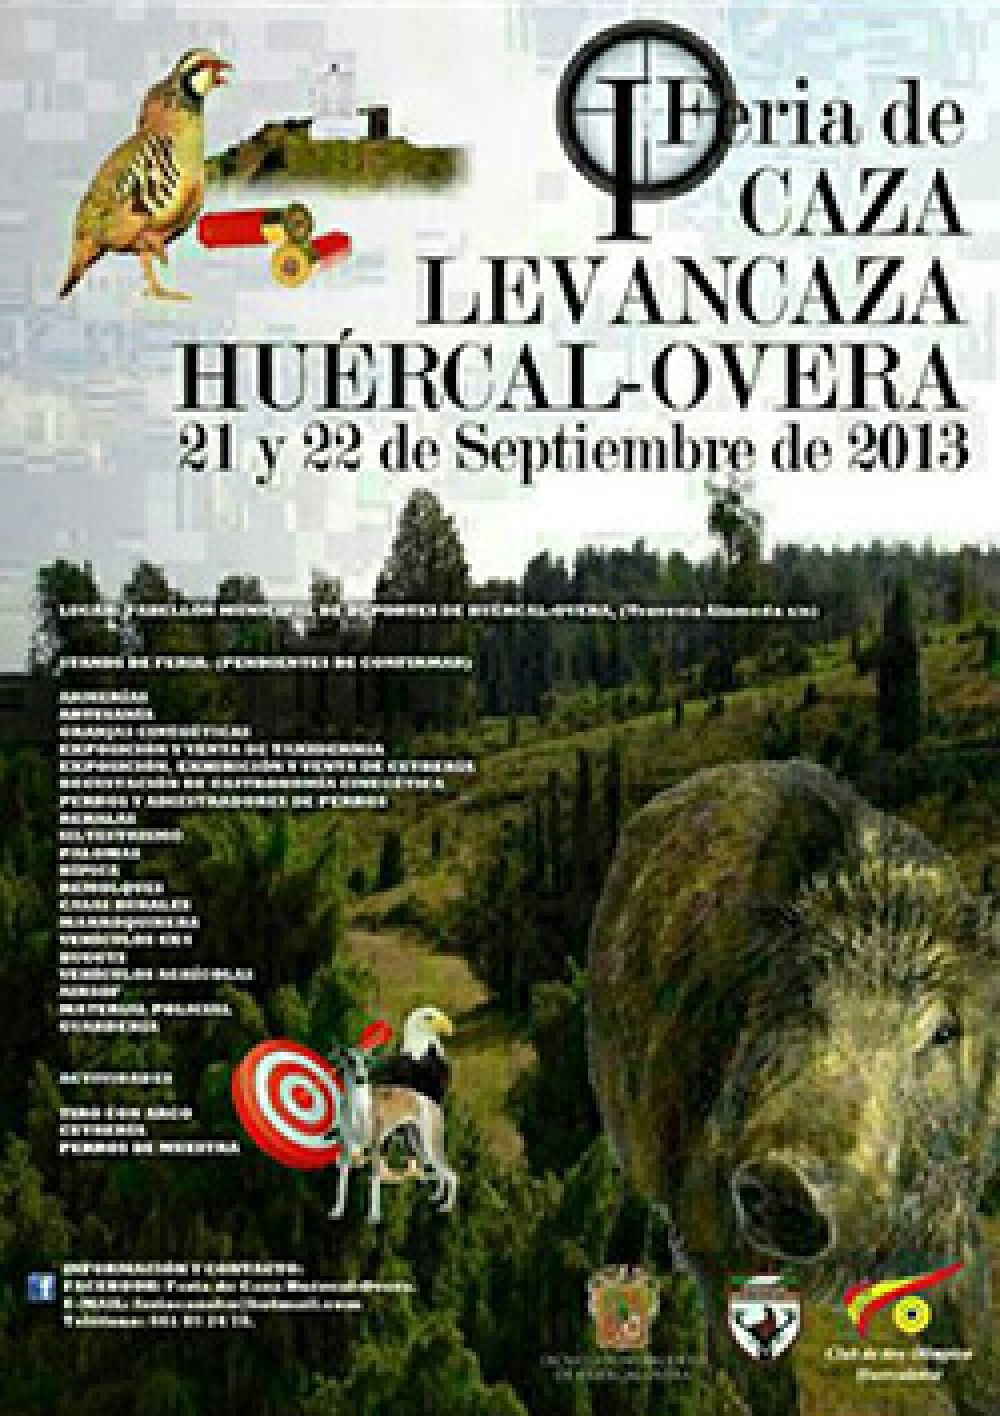 I Feria de Caza Levancaza Huércal-Overa